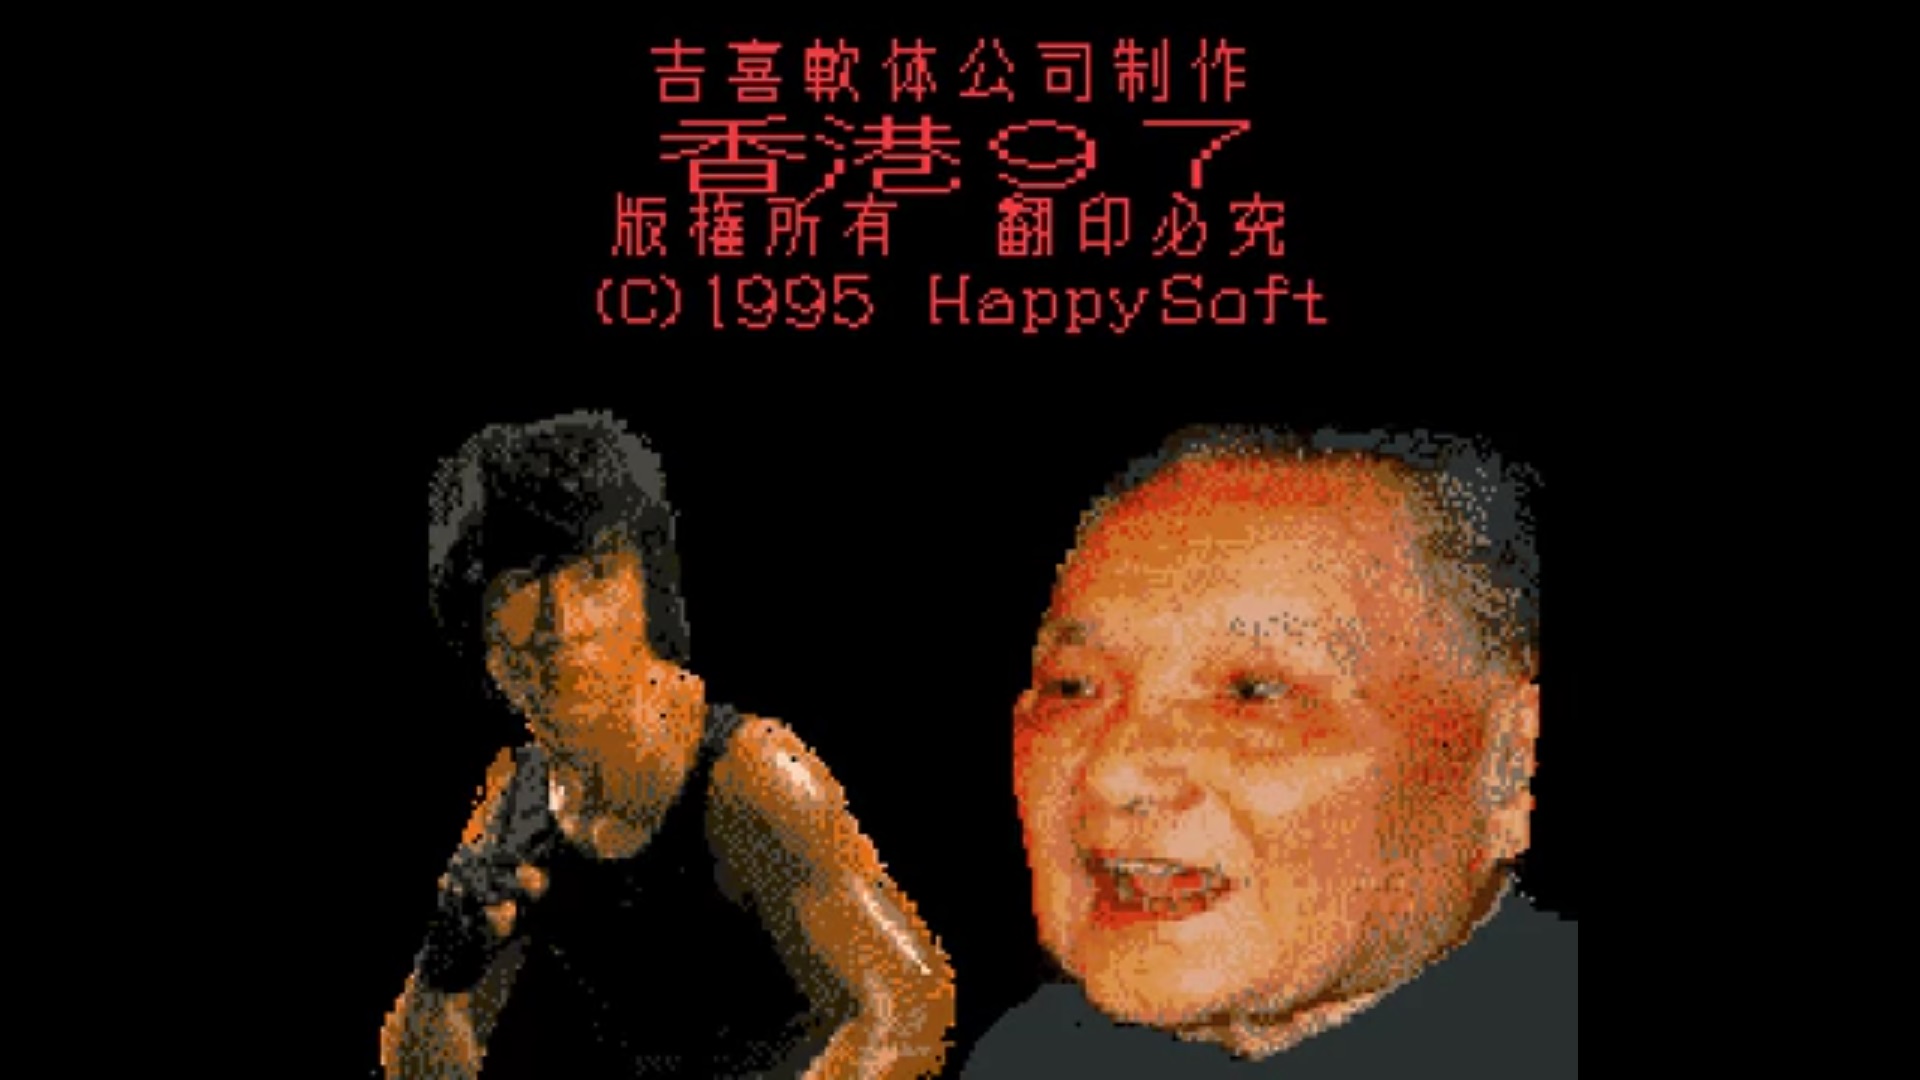 Twórca Hongkong 97, czyli najgorszej gry świata ujawniony